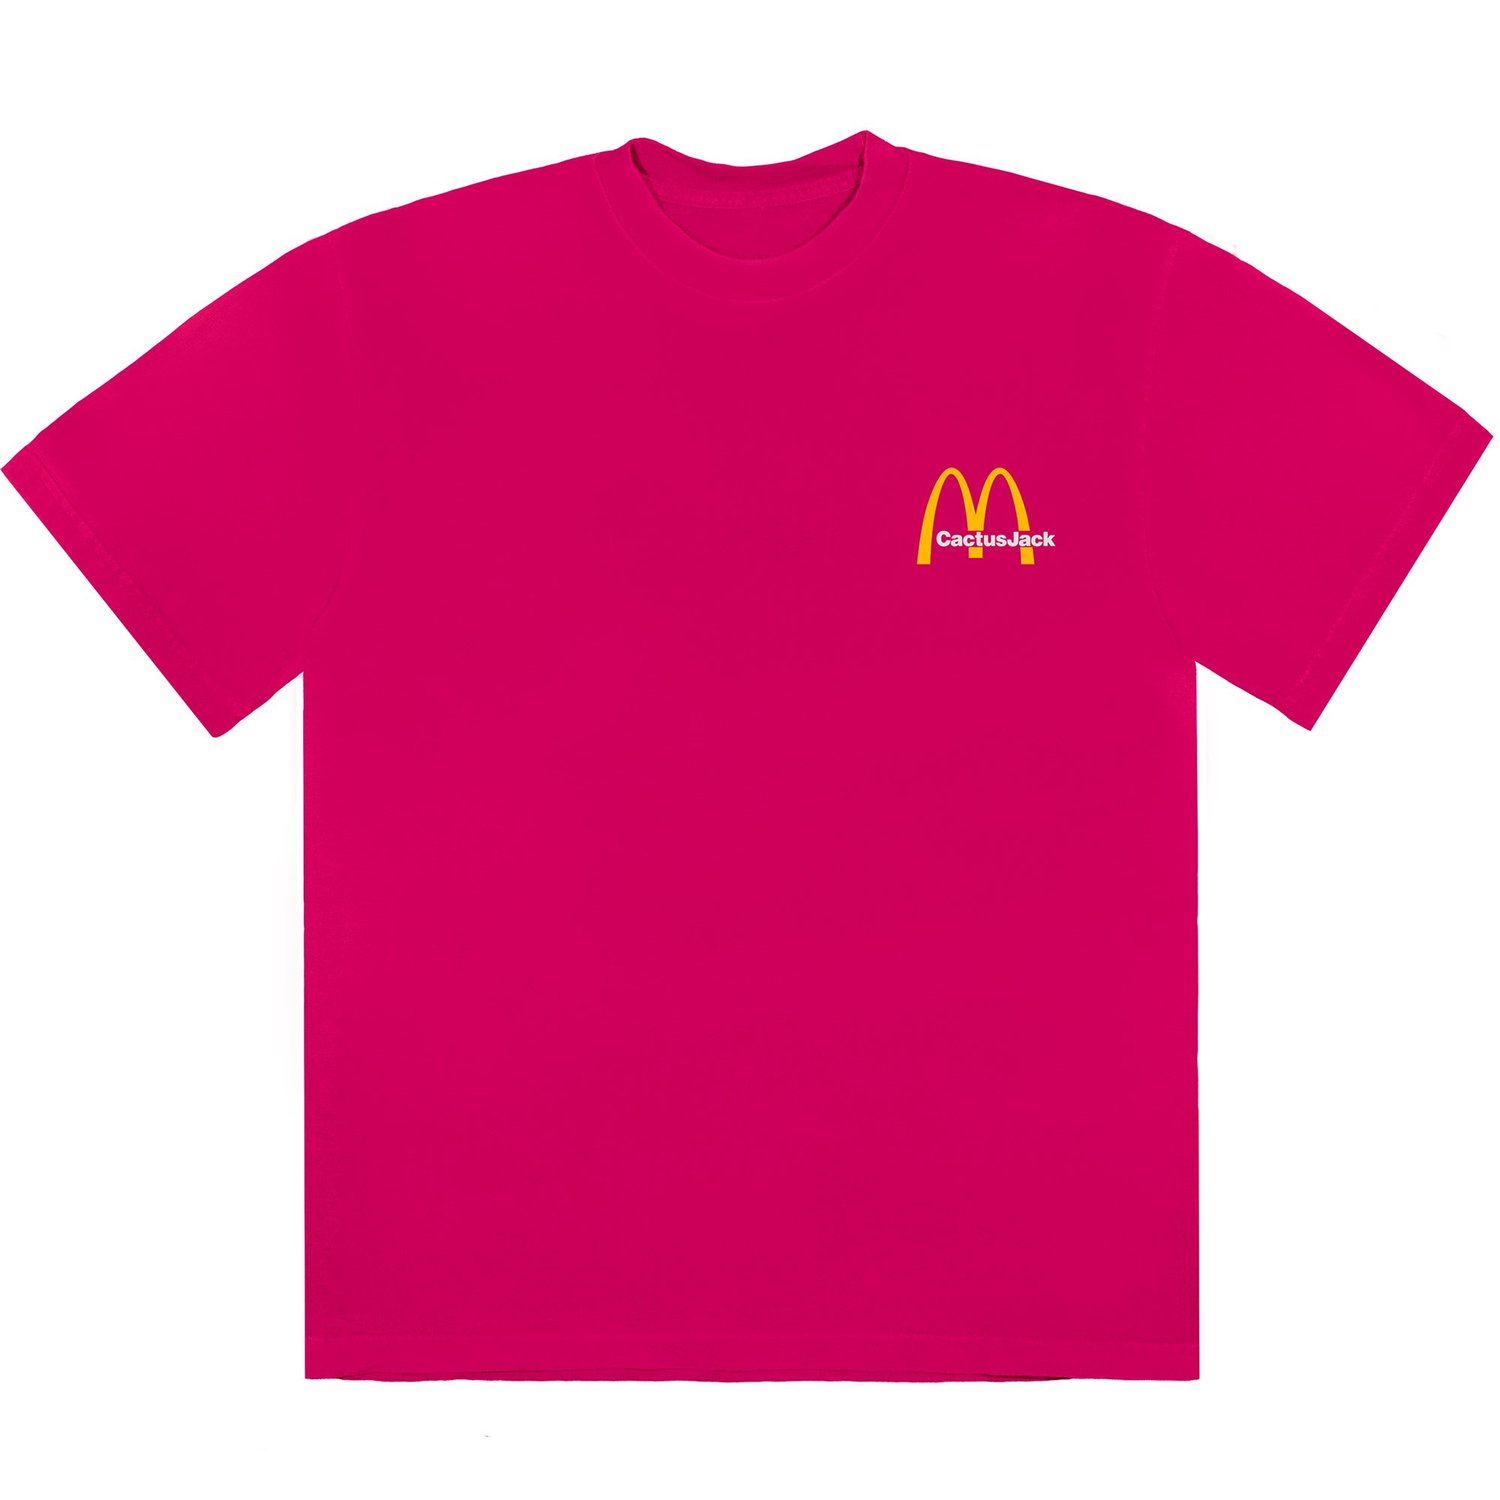 Travis Scott x McDonald's Vintage Action Figure II T-Shirt Pink Men's 